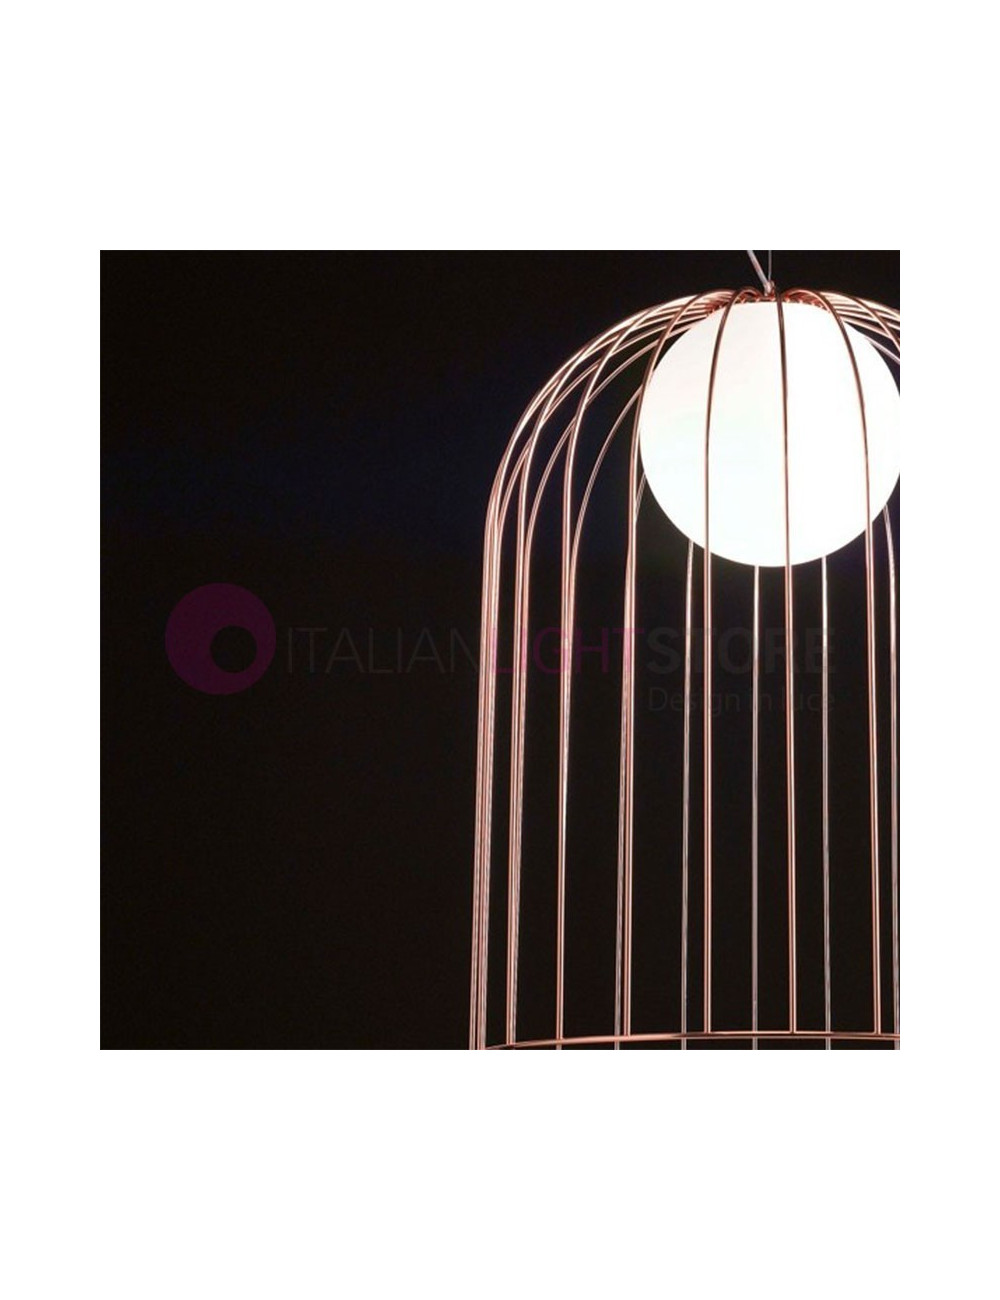 KLUVÌ 1094 Selene Iluminación | Suspendido Jaula de Metal de Cromo de Cobre Diseño Moderno